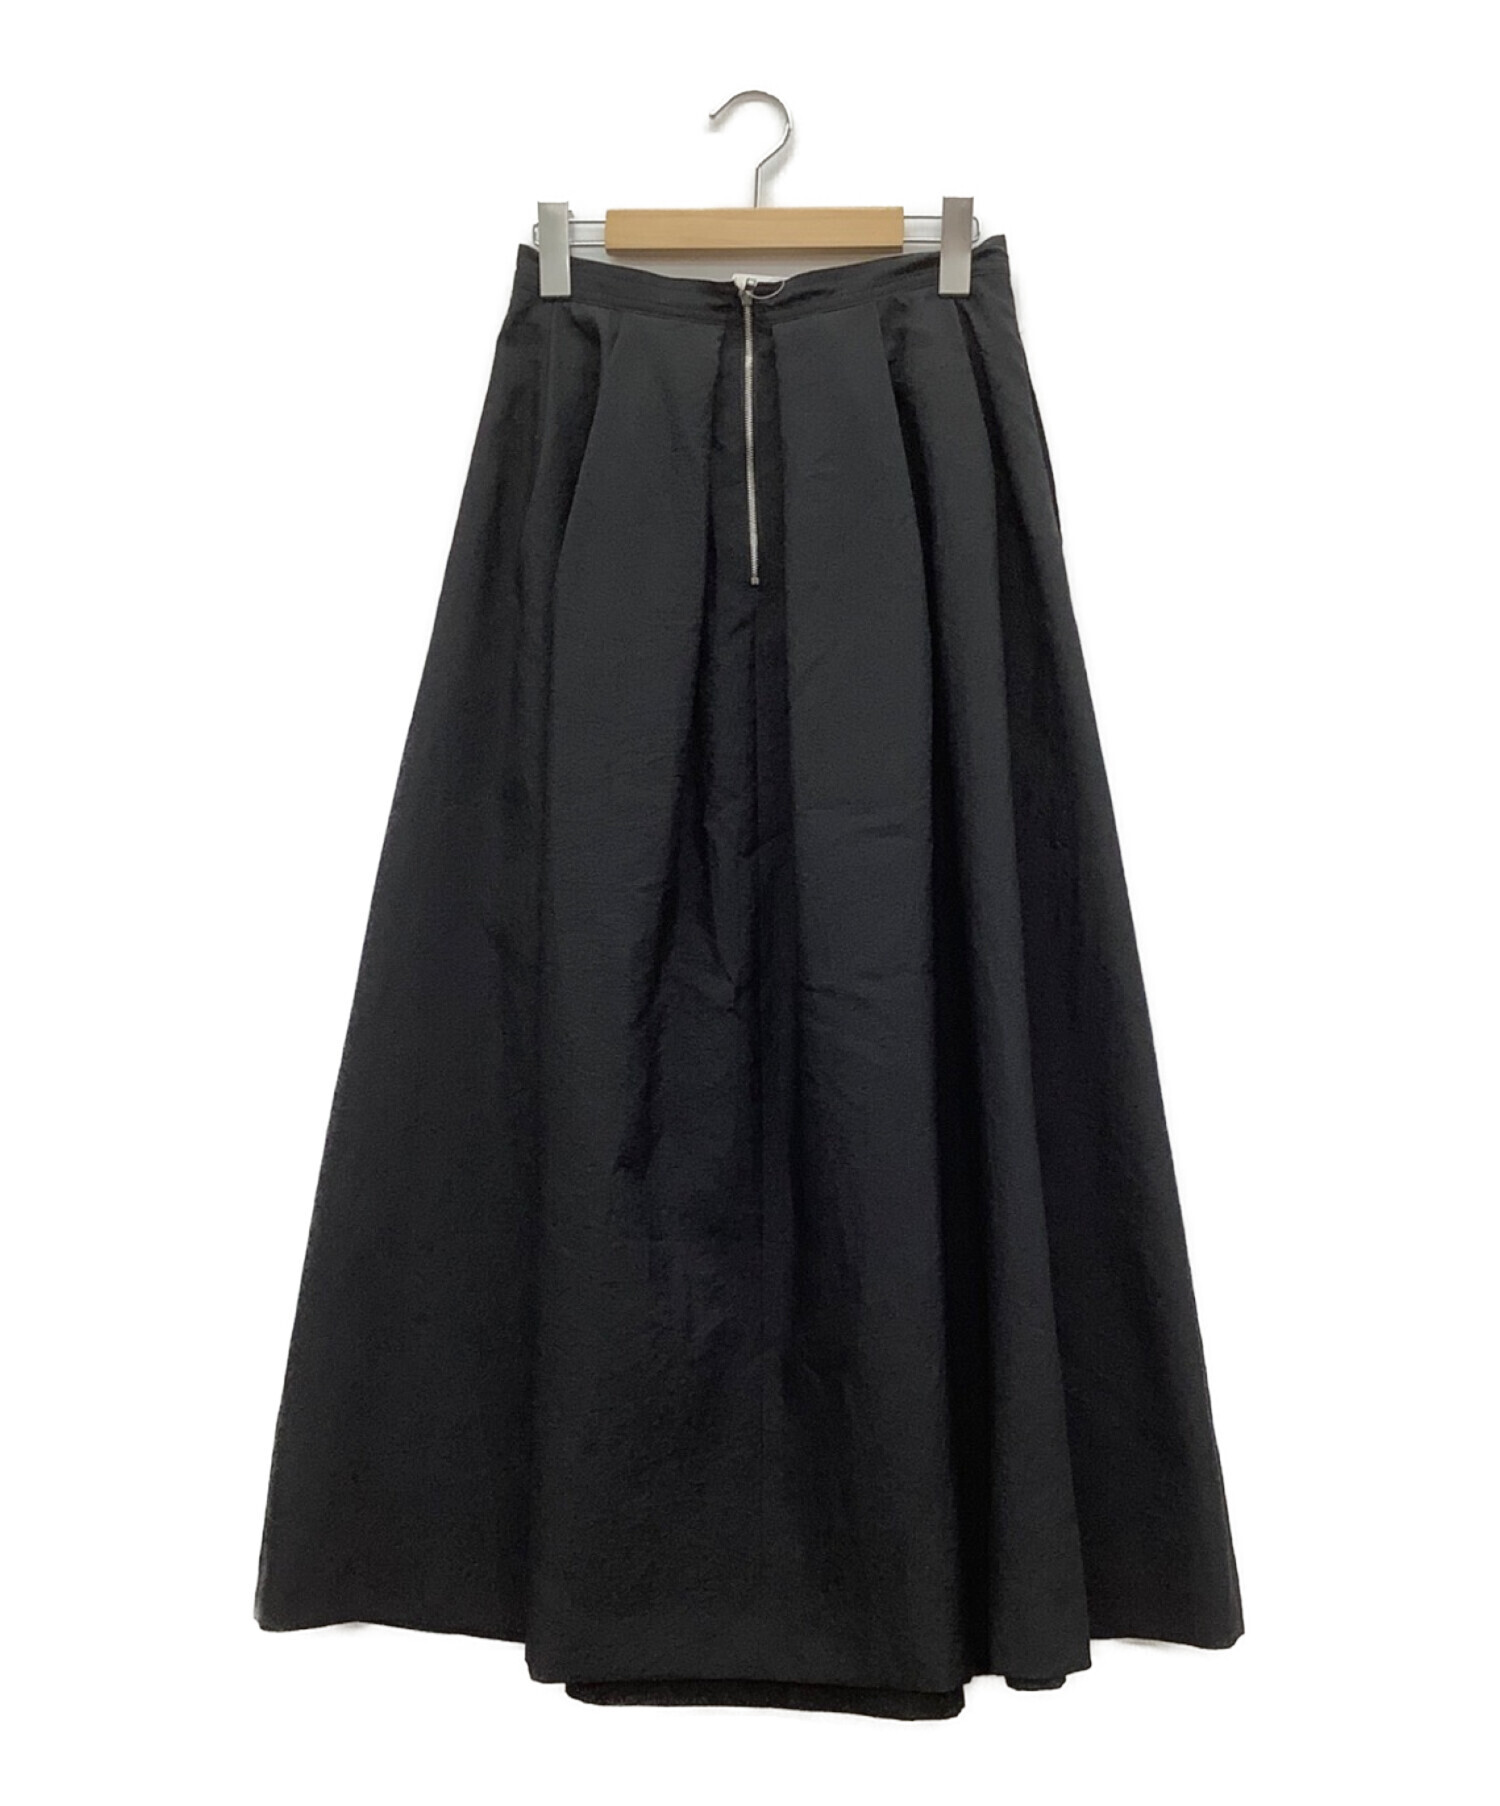 Spick and Span (スピックアンドスパン) ツイルボリュームスカート ブラック サイズ:36 未使用品